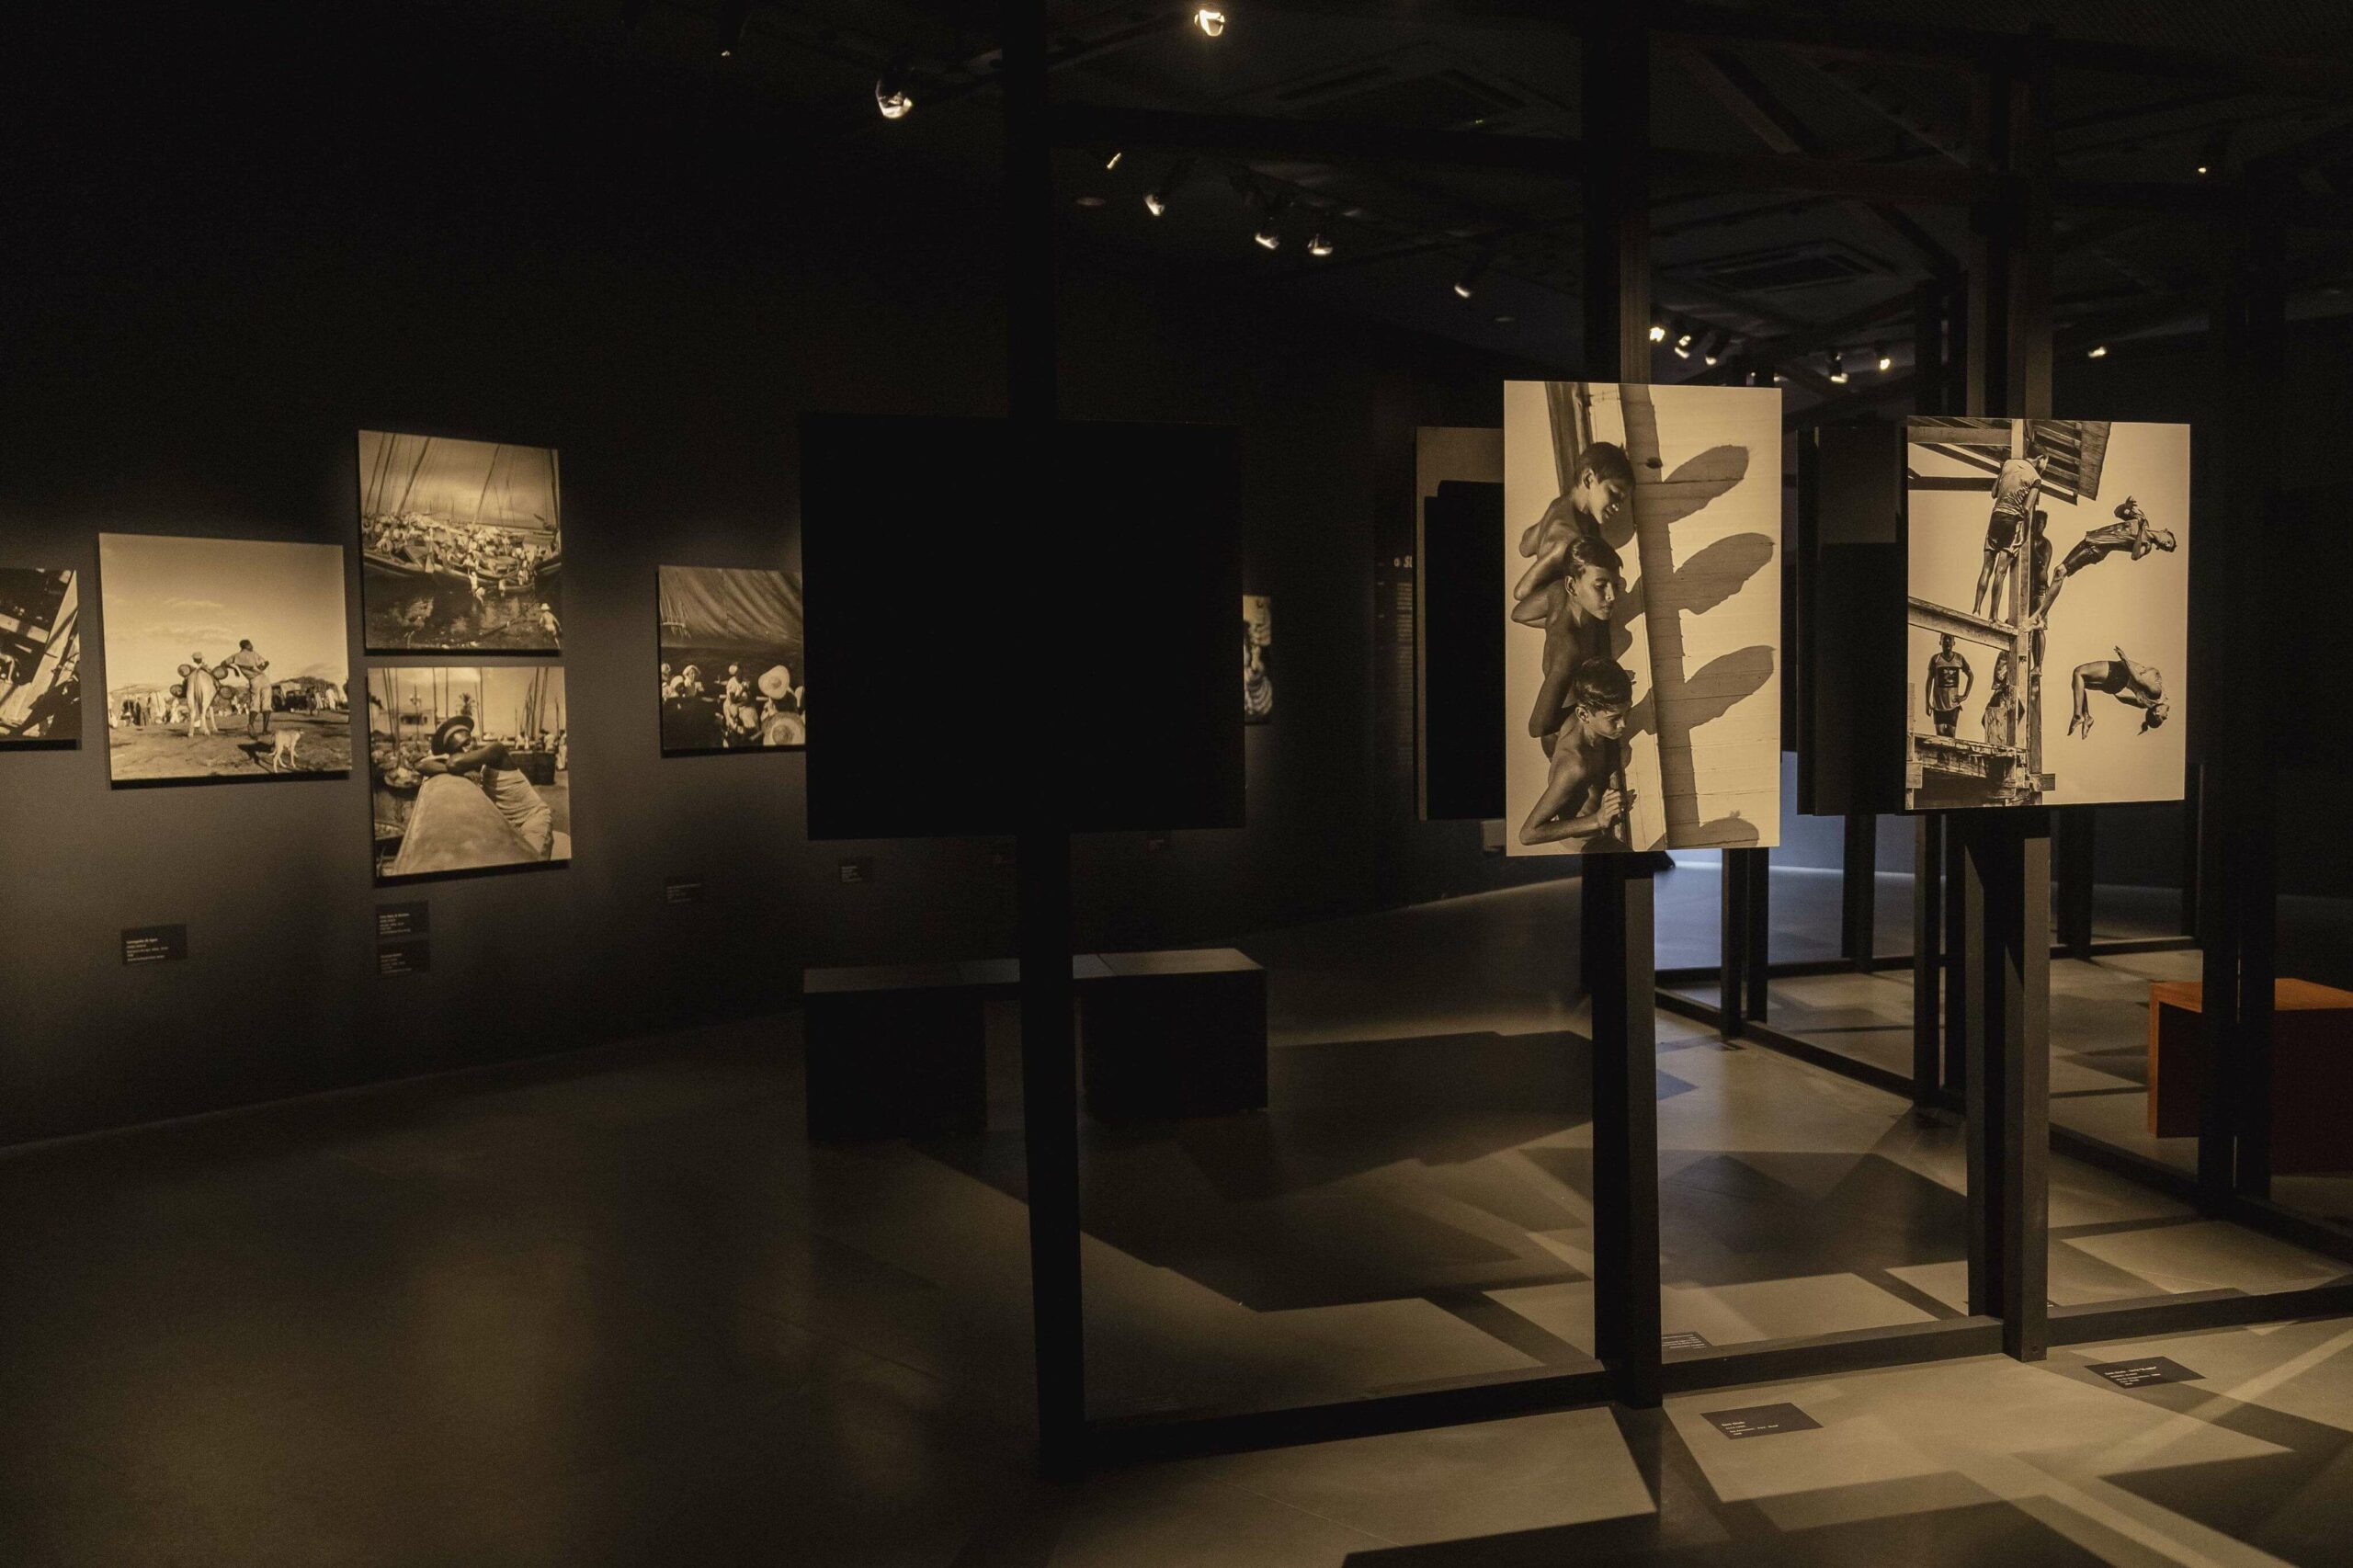 Sala escura com foco de luzes nos quadros, que são fotografias em preto e branco.